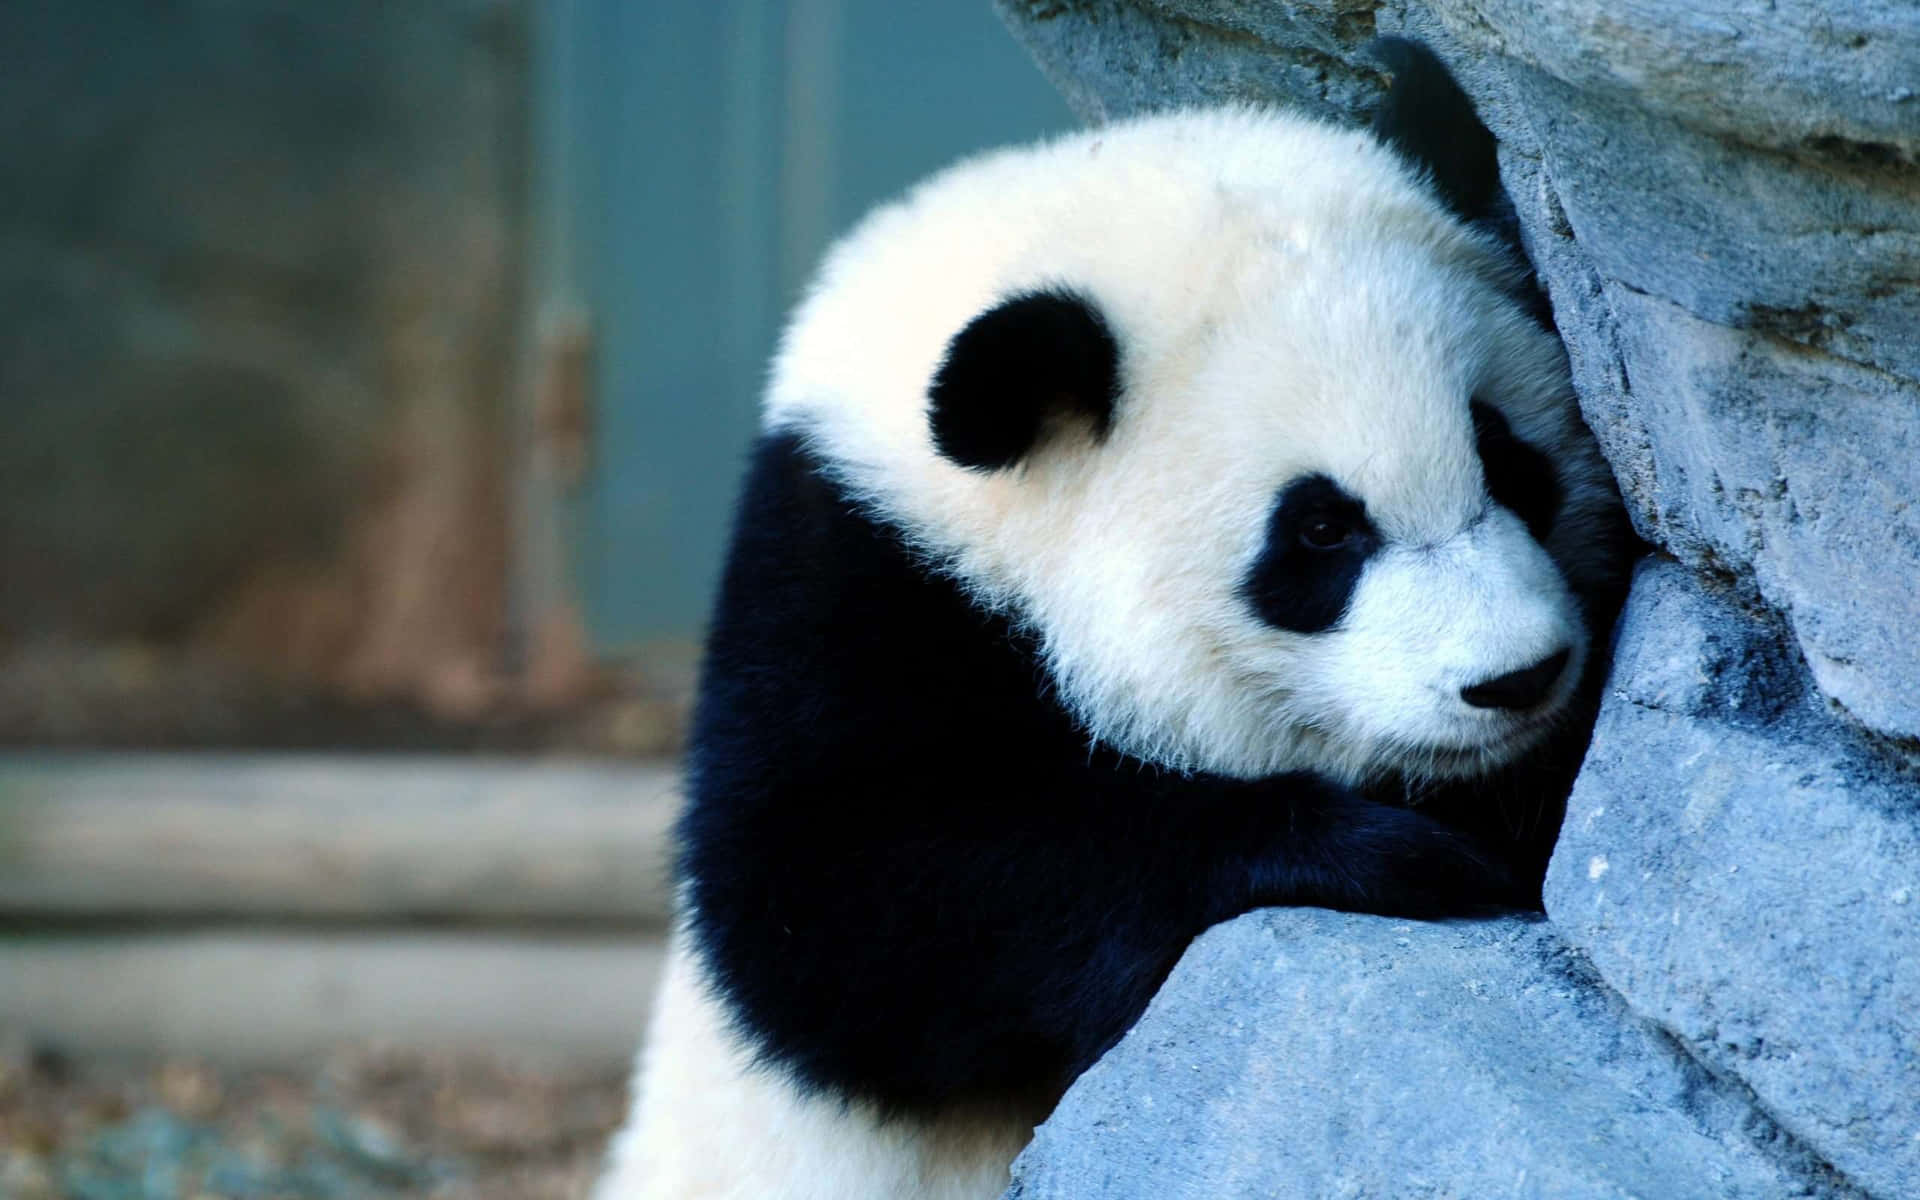 Umjovem Panda Desfrutando De Um Lanche Em Seu Habitat Natural.